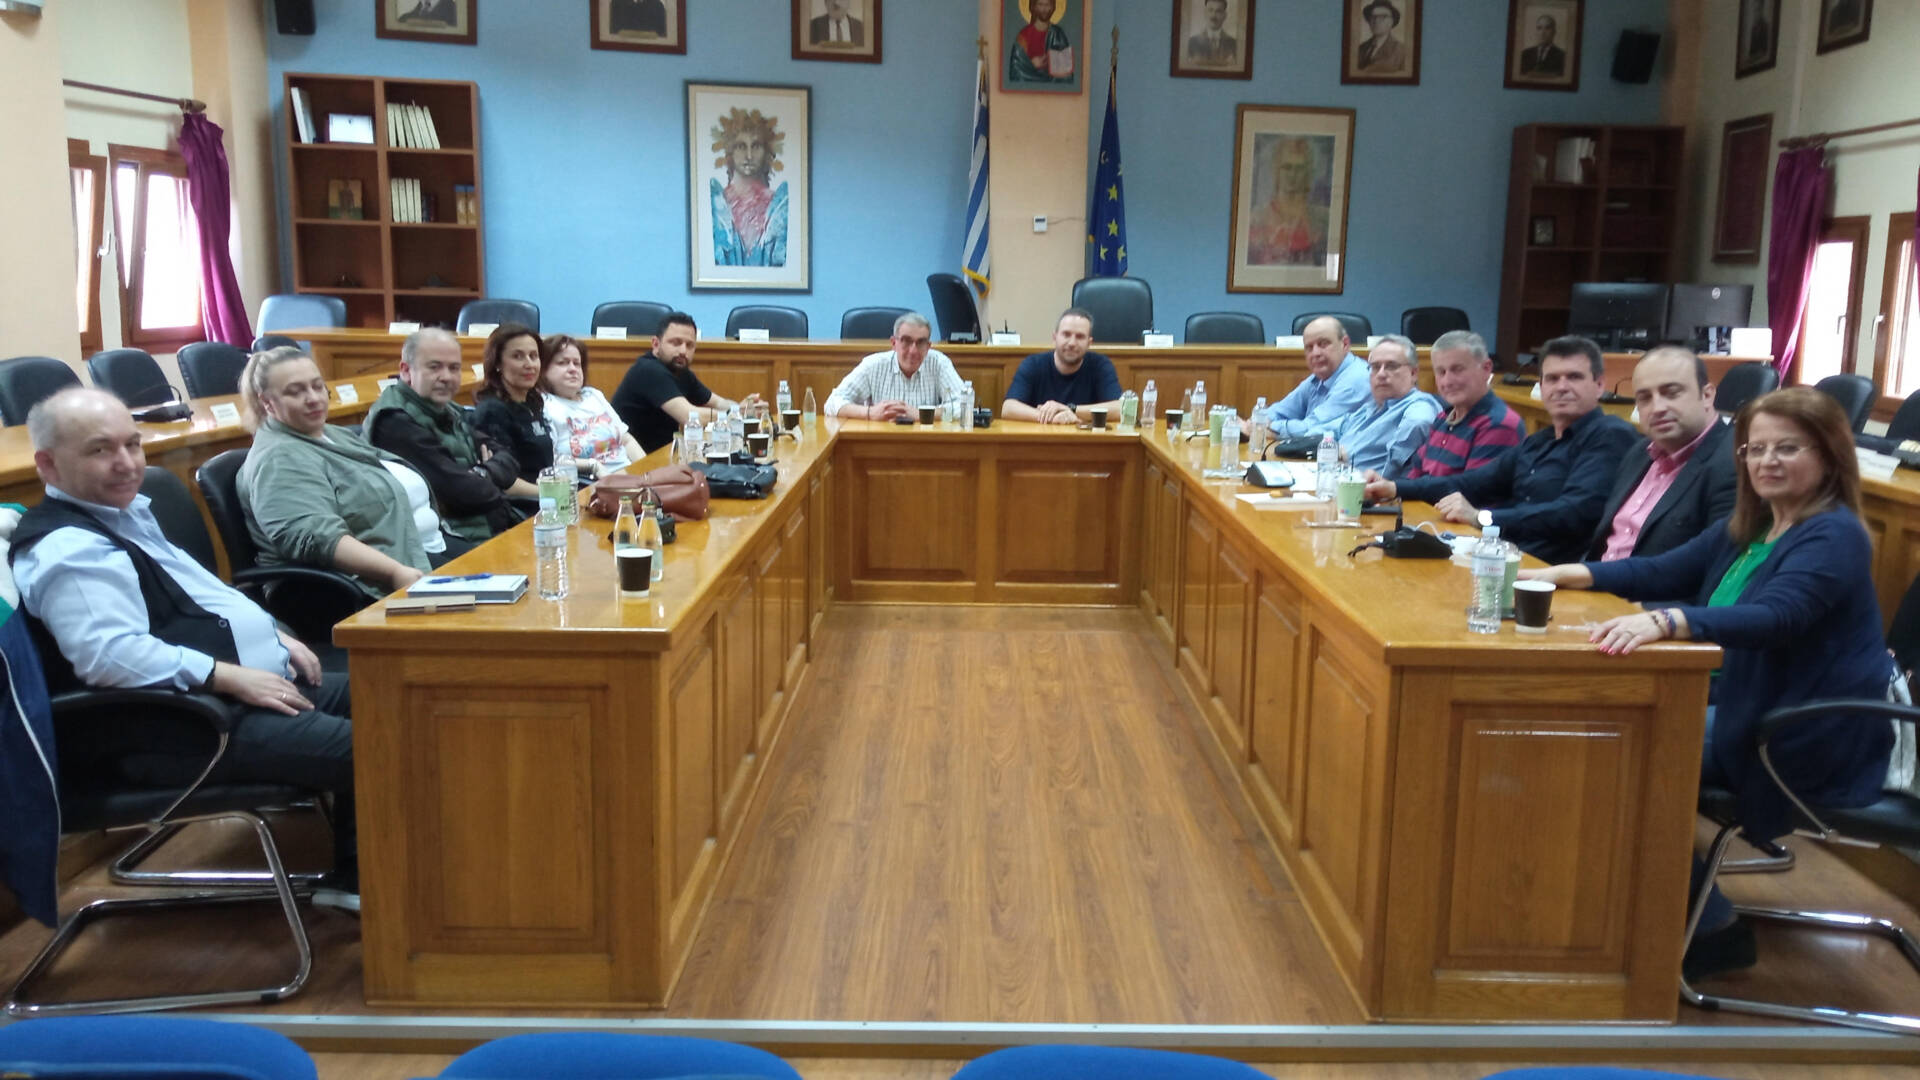 2ο Διευρυμένο Διοικητικό Συμβούλιο της Ομοσπονδίας Εμπορικών Συλλόγων Δυτικής και Κεντρικής Μακεδονίας στο Αμύνταιο